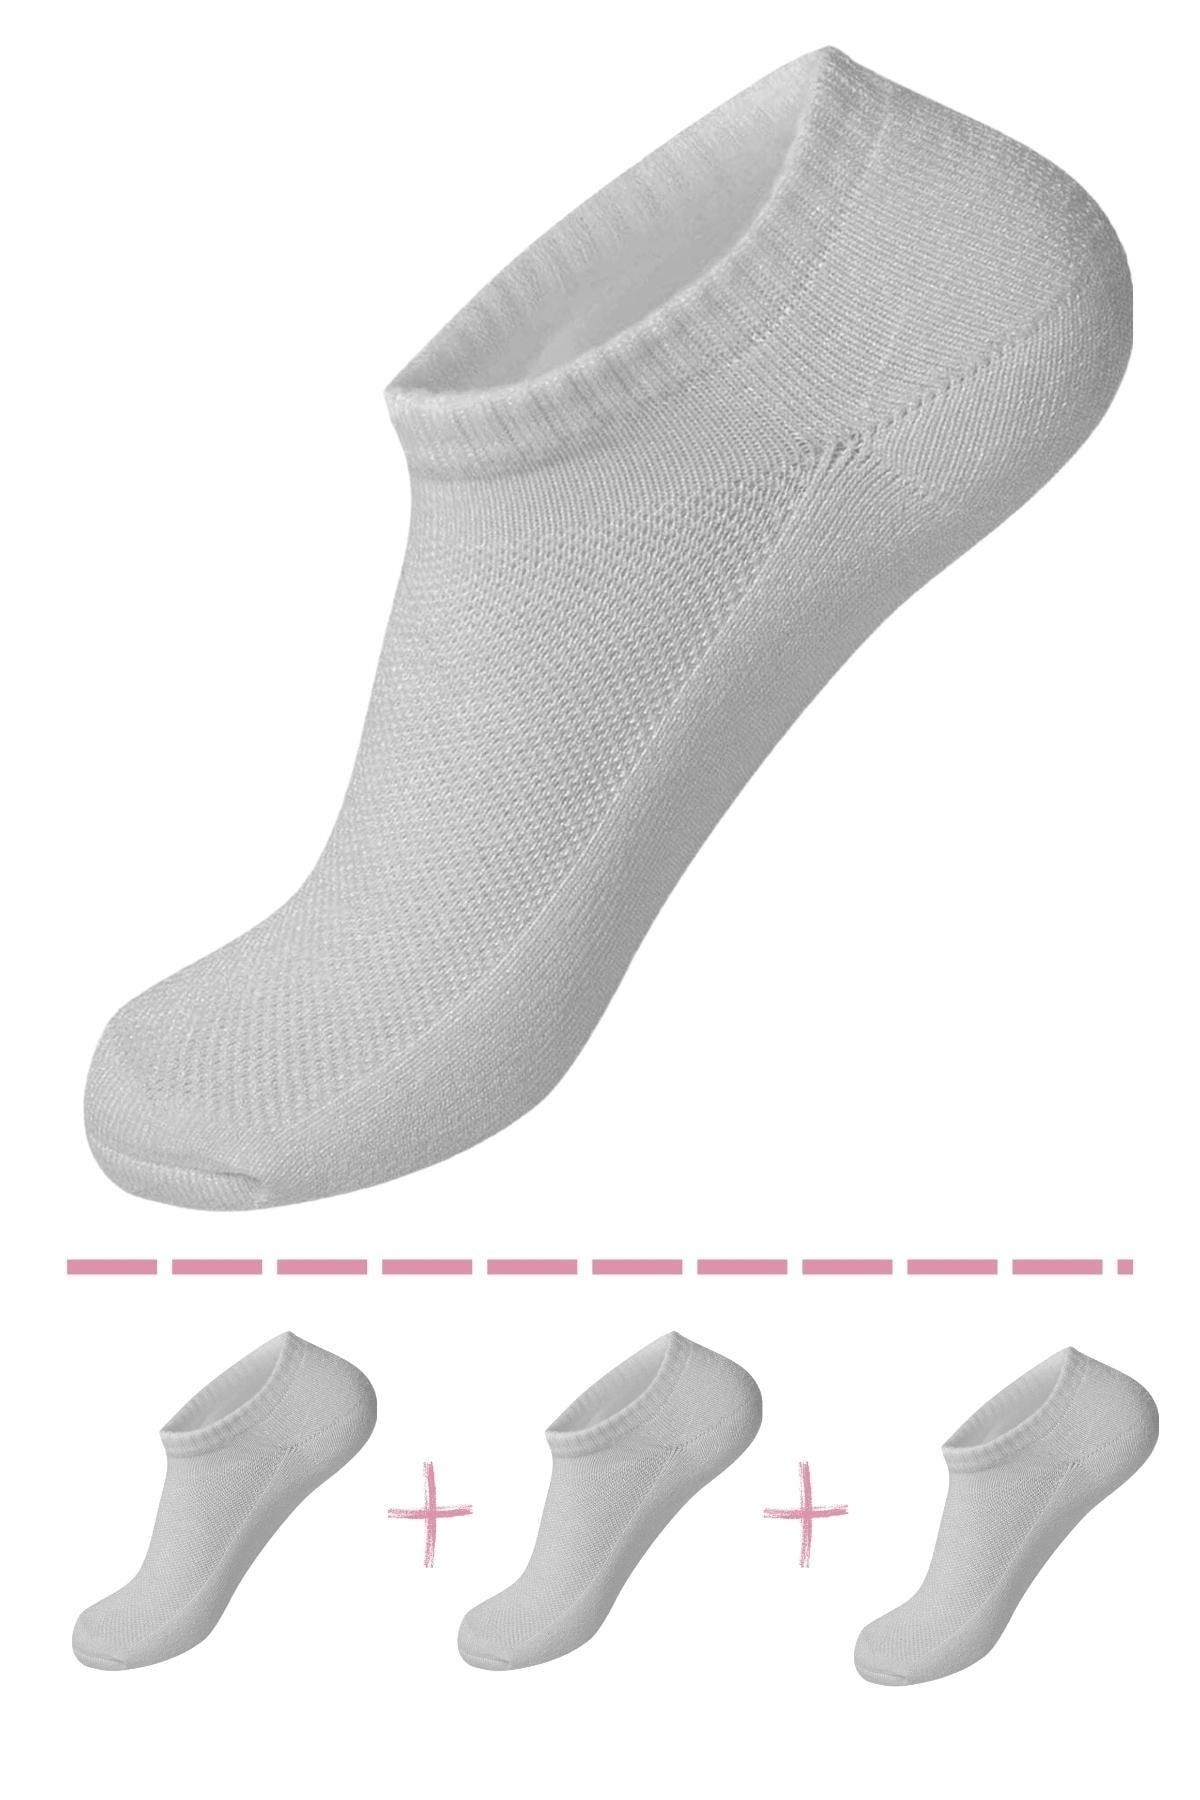 TAMPAP 3 Adet Kadın Patik Çorap Snekars Çorabı Kısa Çorap Babet Çorap Kadın Çorabı